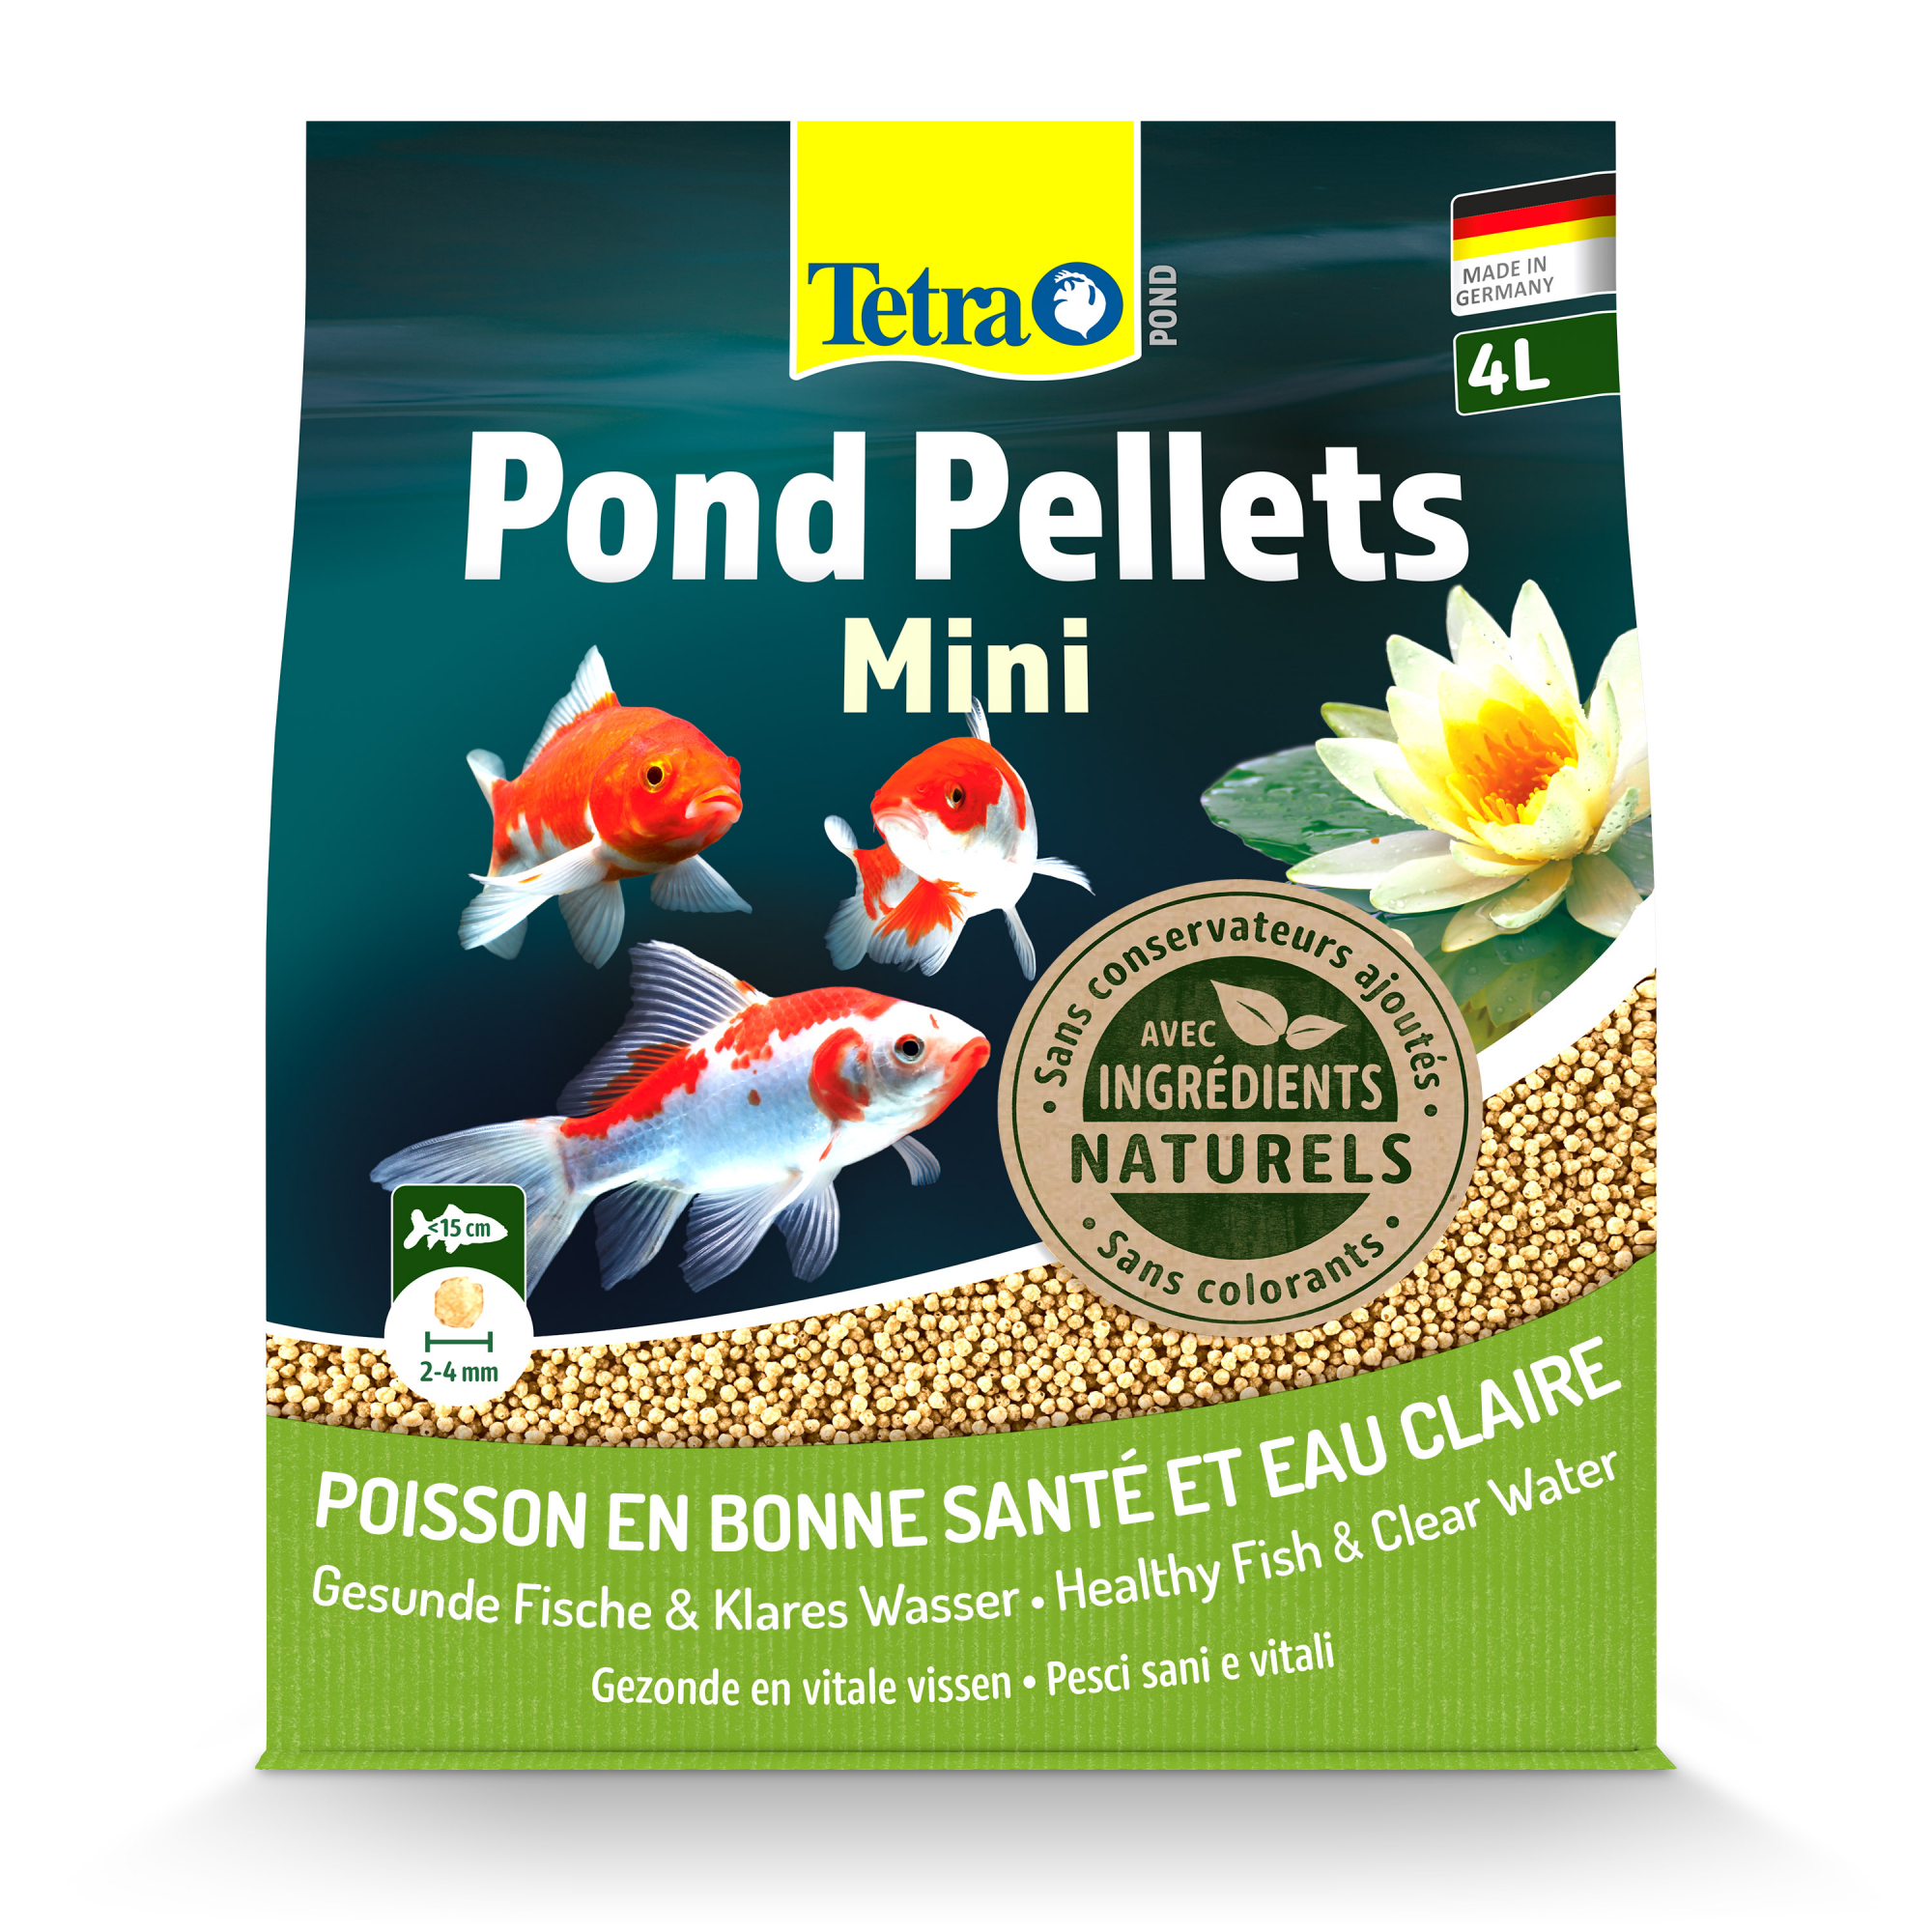 Tetra Pond Pellets Mini Alleinfuttermittel für kleine Teichfische